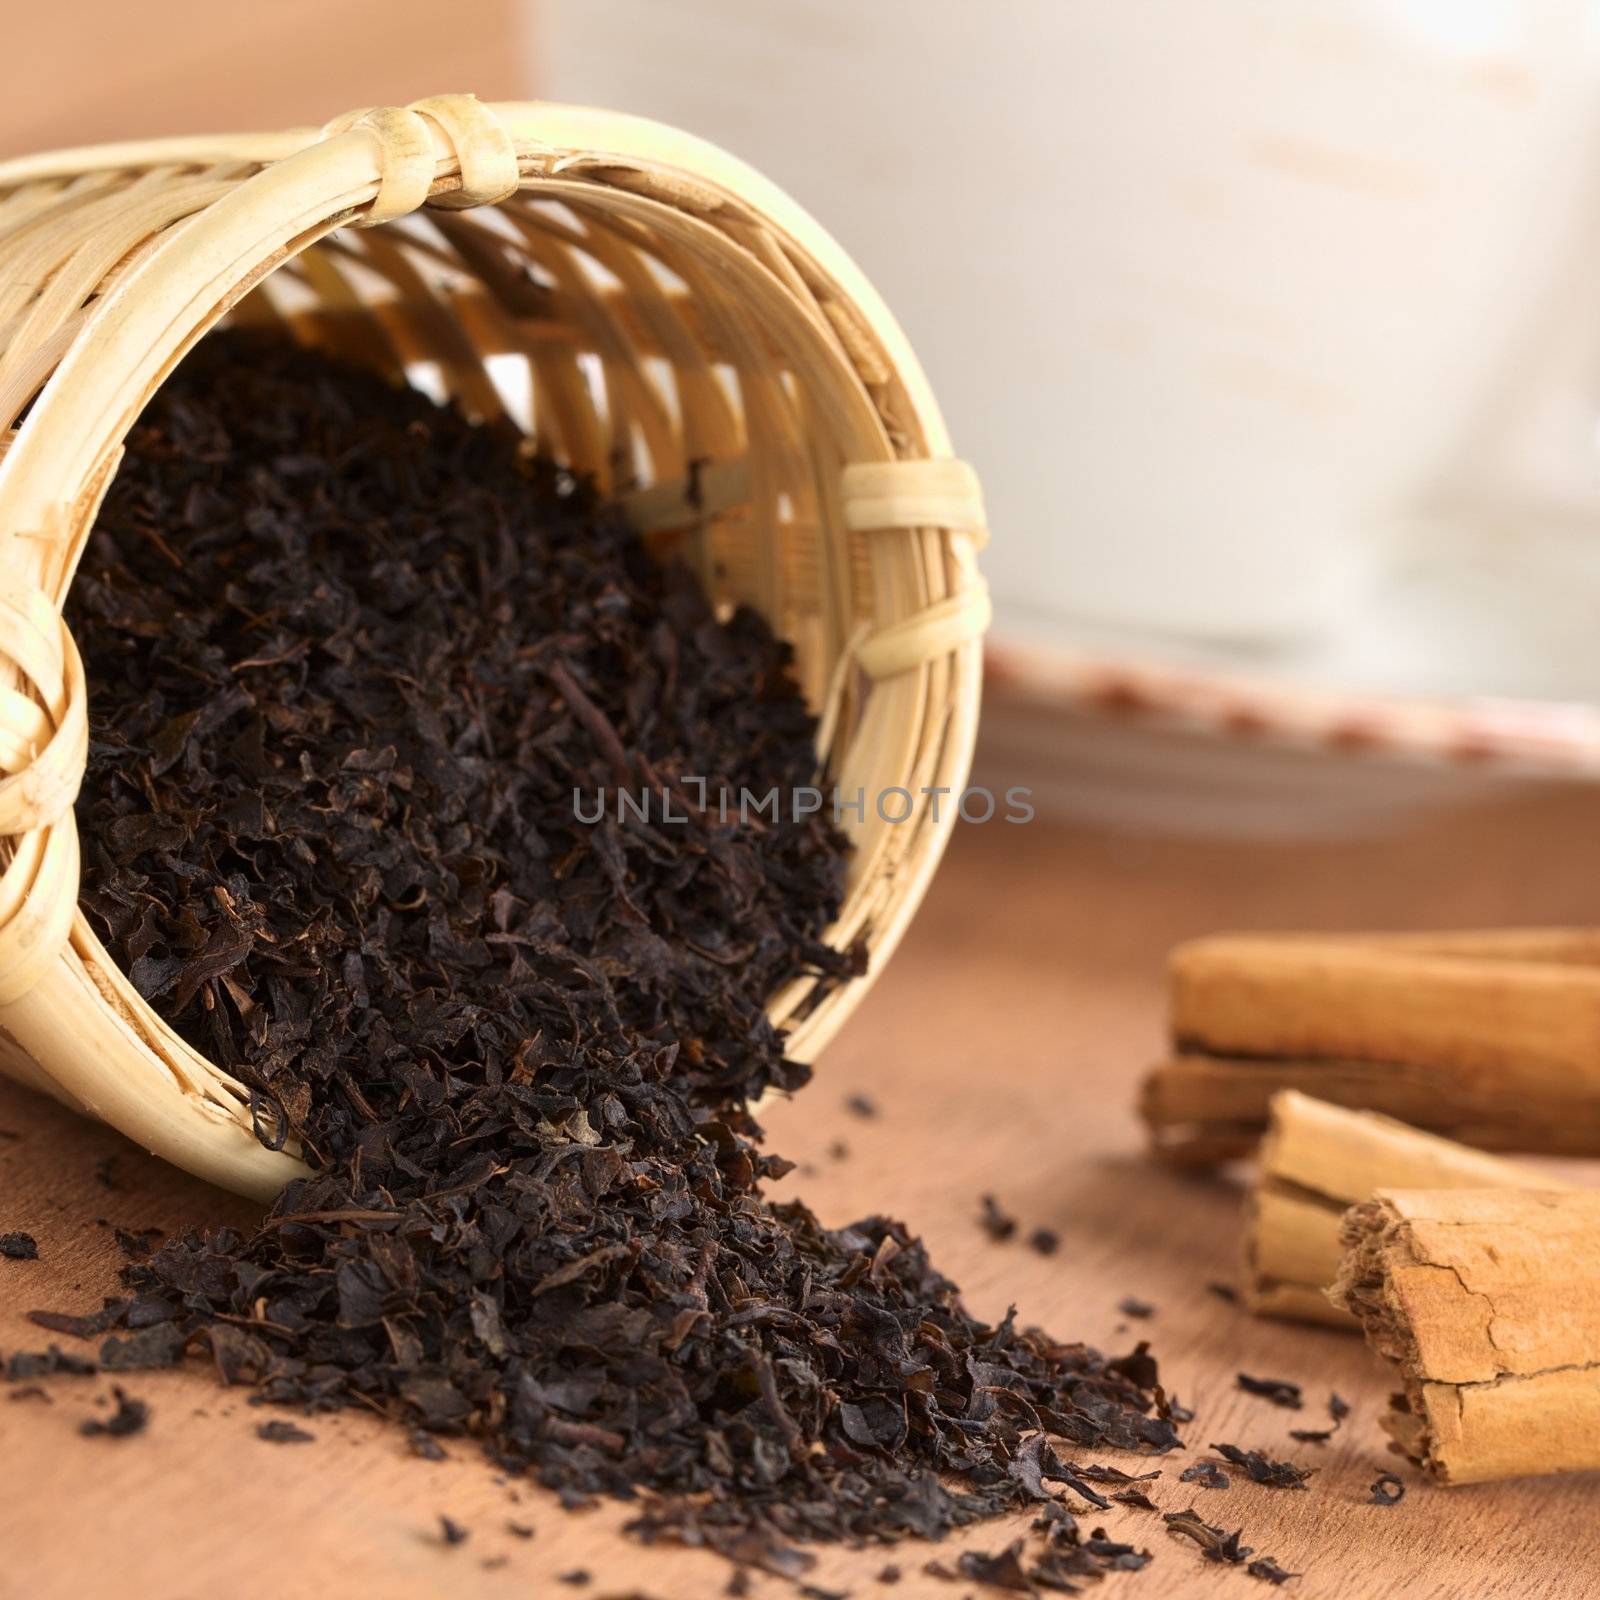 Tea Infuser with Black Tea by ildi